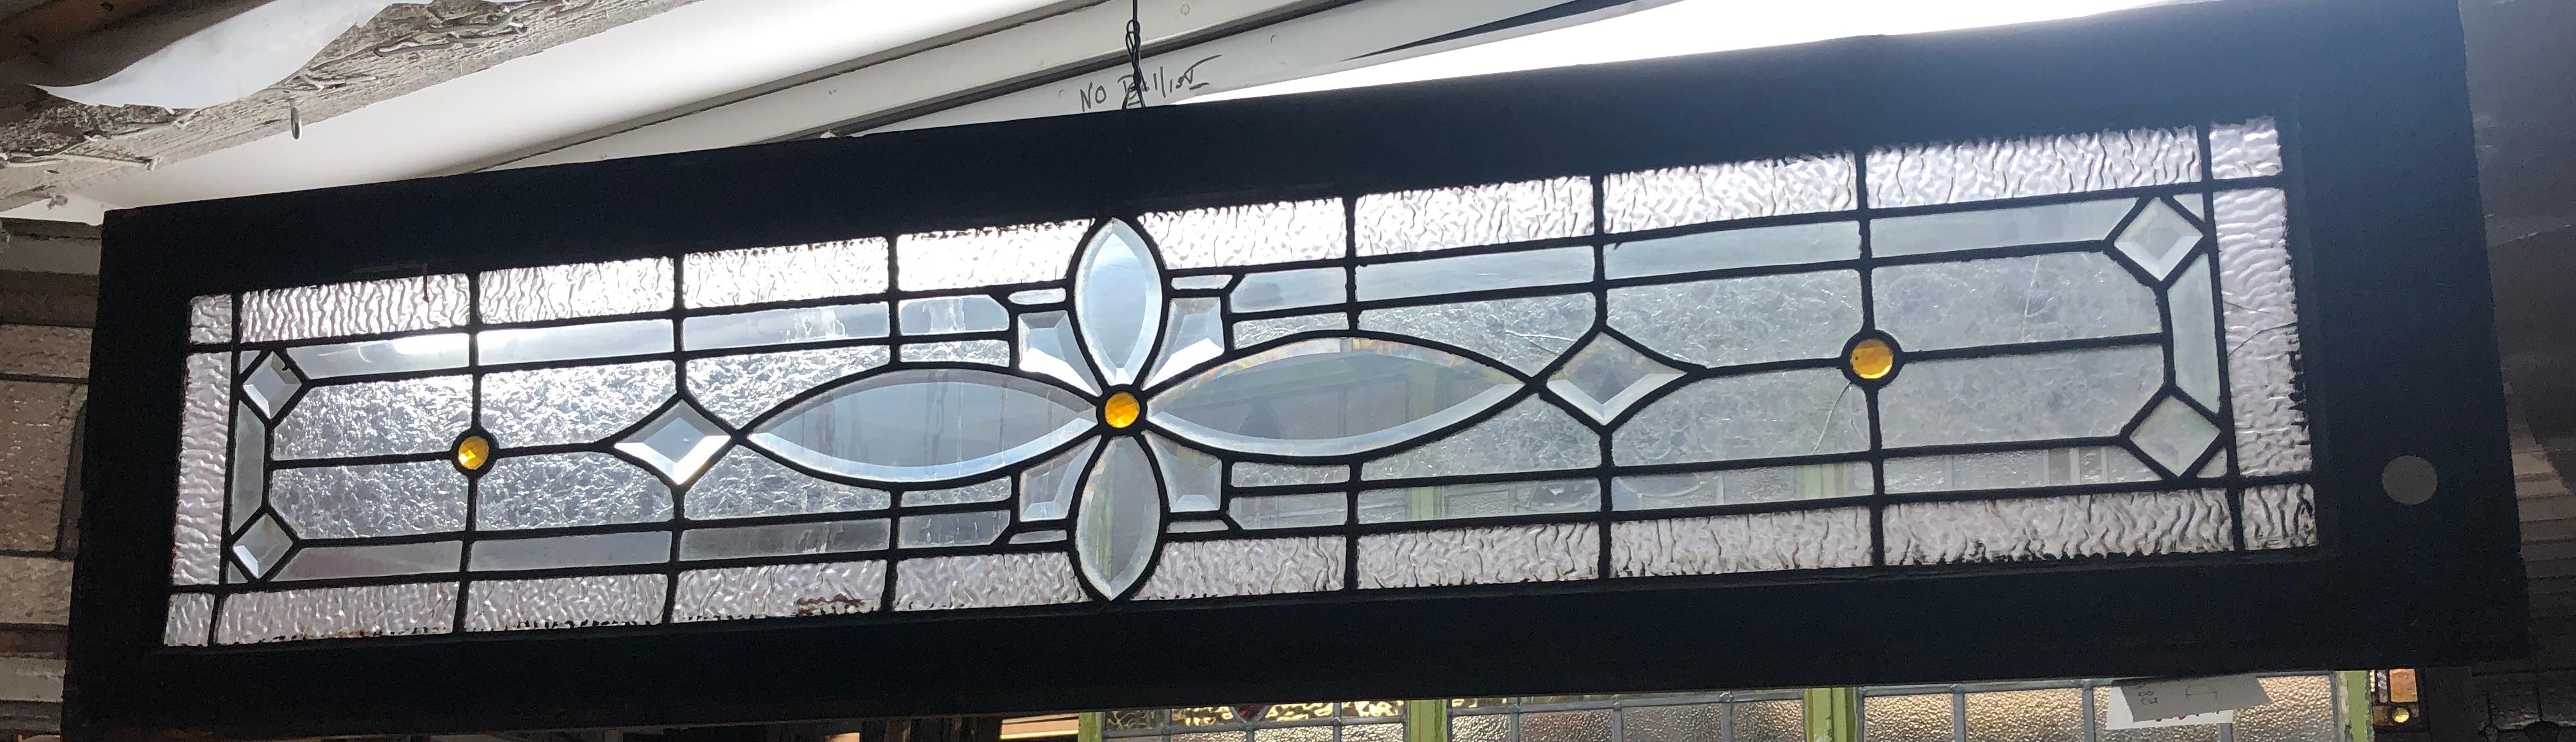 Amerikanisches Oberlichtfenster aus der Jahrhundertwende. Verbleites Design mit strukturierten Glasstücken und drei kleinen bernsteinfarbenen Kreisen.
Derzeit in einem provisorischen Holzrahmen untergebracht - die Gesamtmaße gelten für die